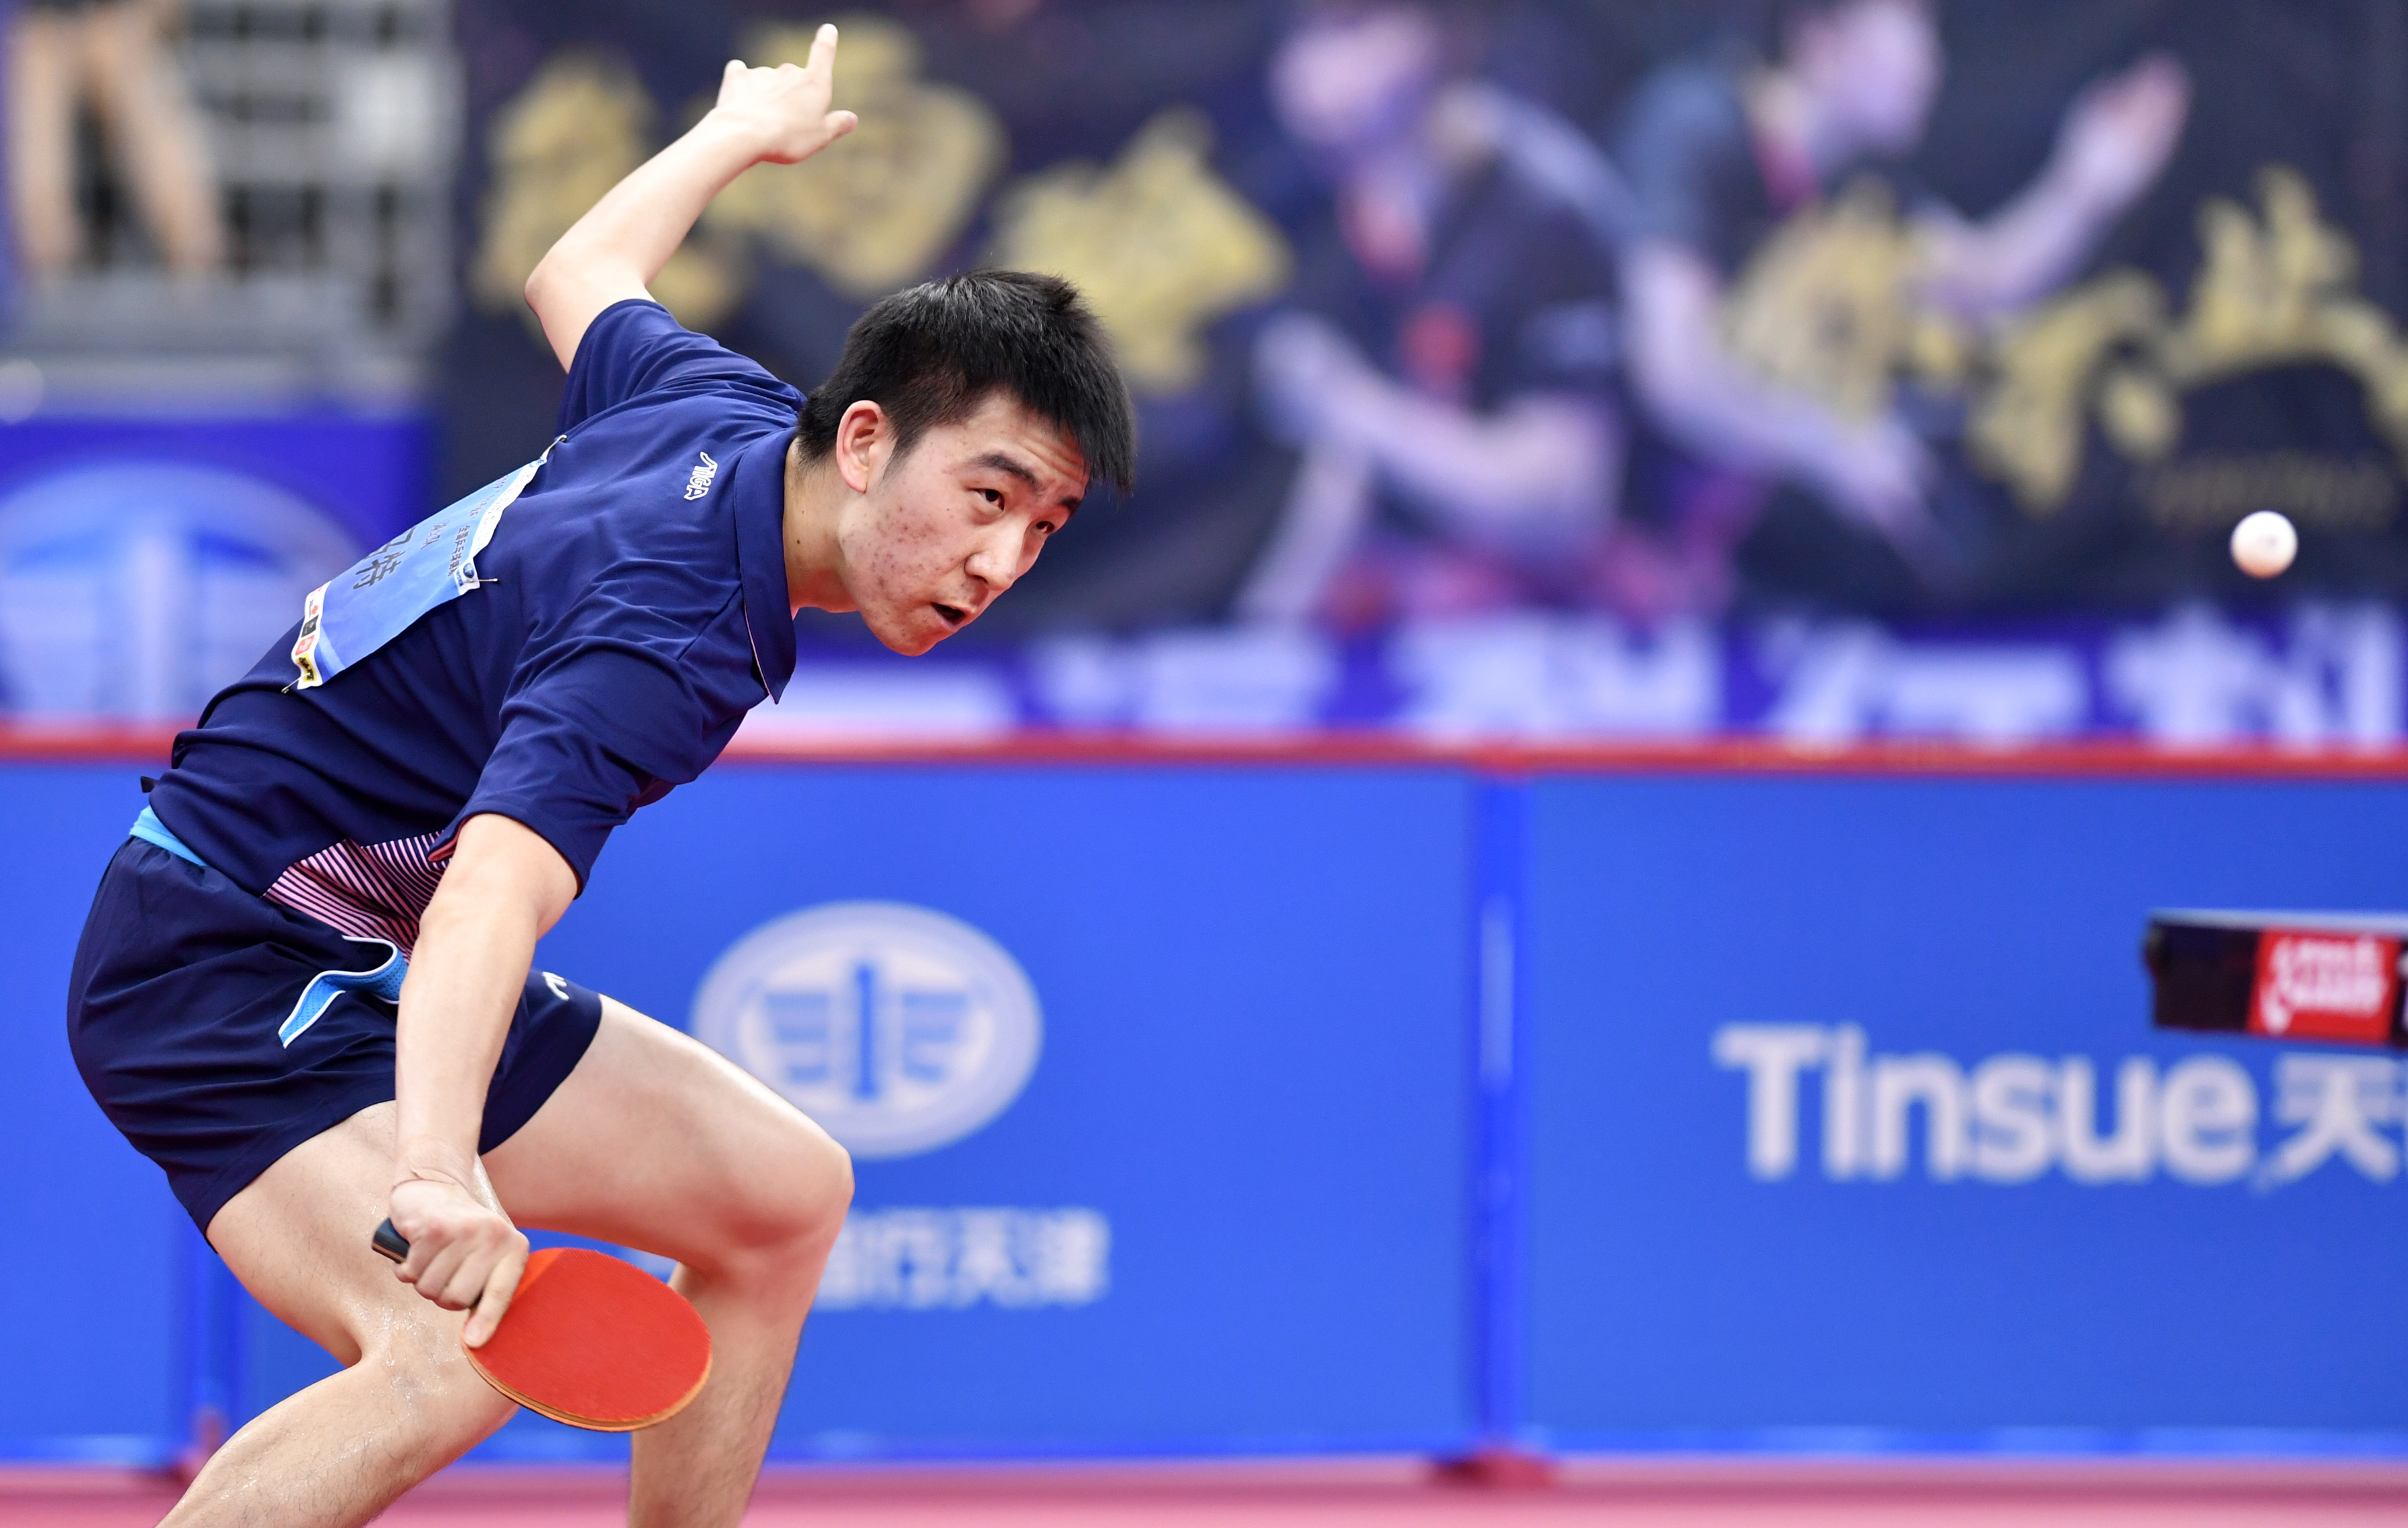 新华社记者李然摄当日,在天津武清举行的2019年全国乒乓球锦标赛男子